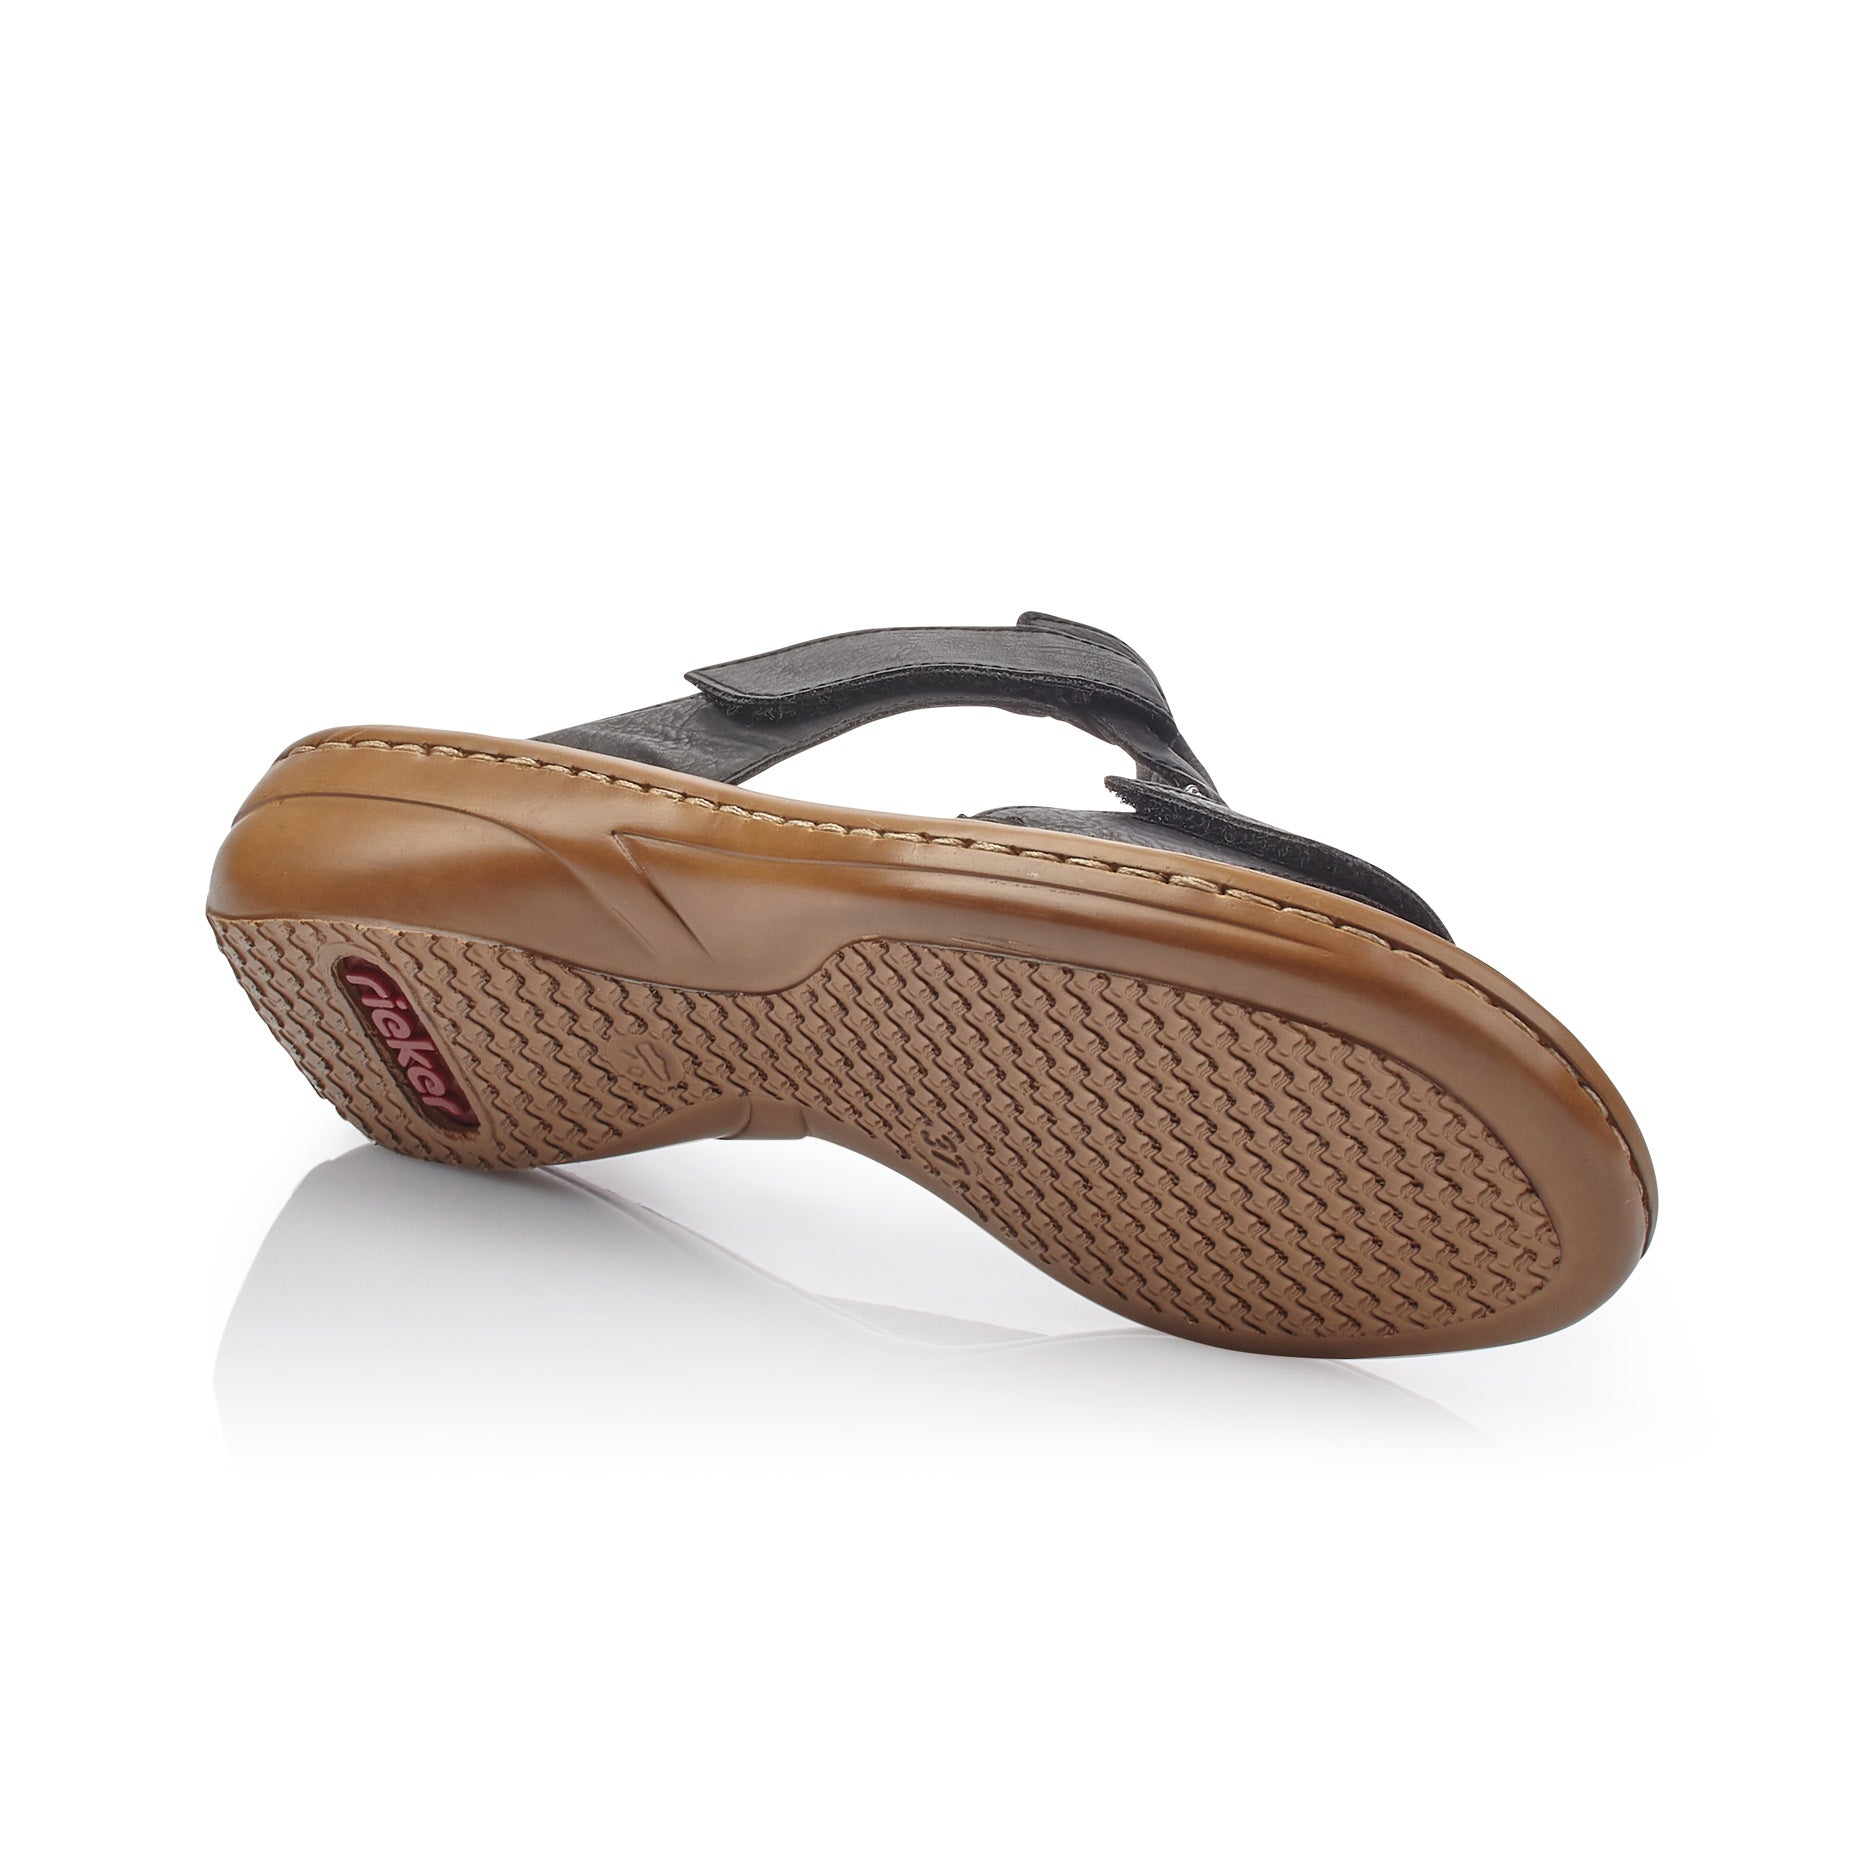 Rieker 60885-00 Women's Sandals